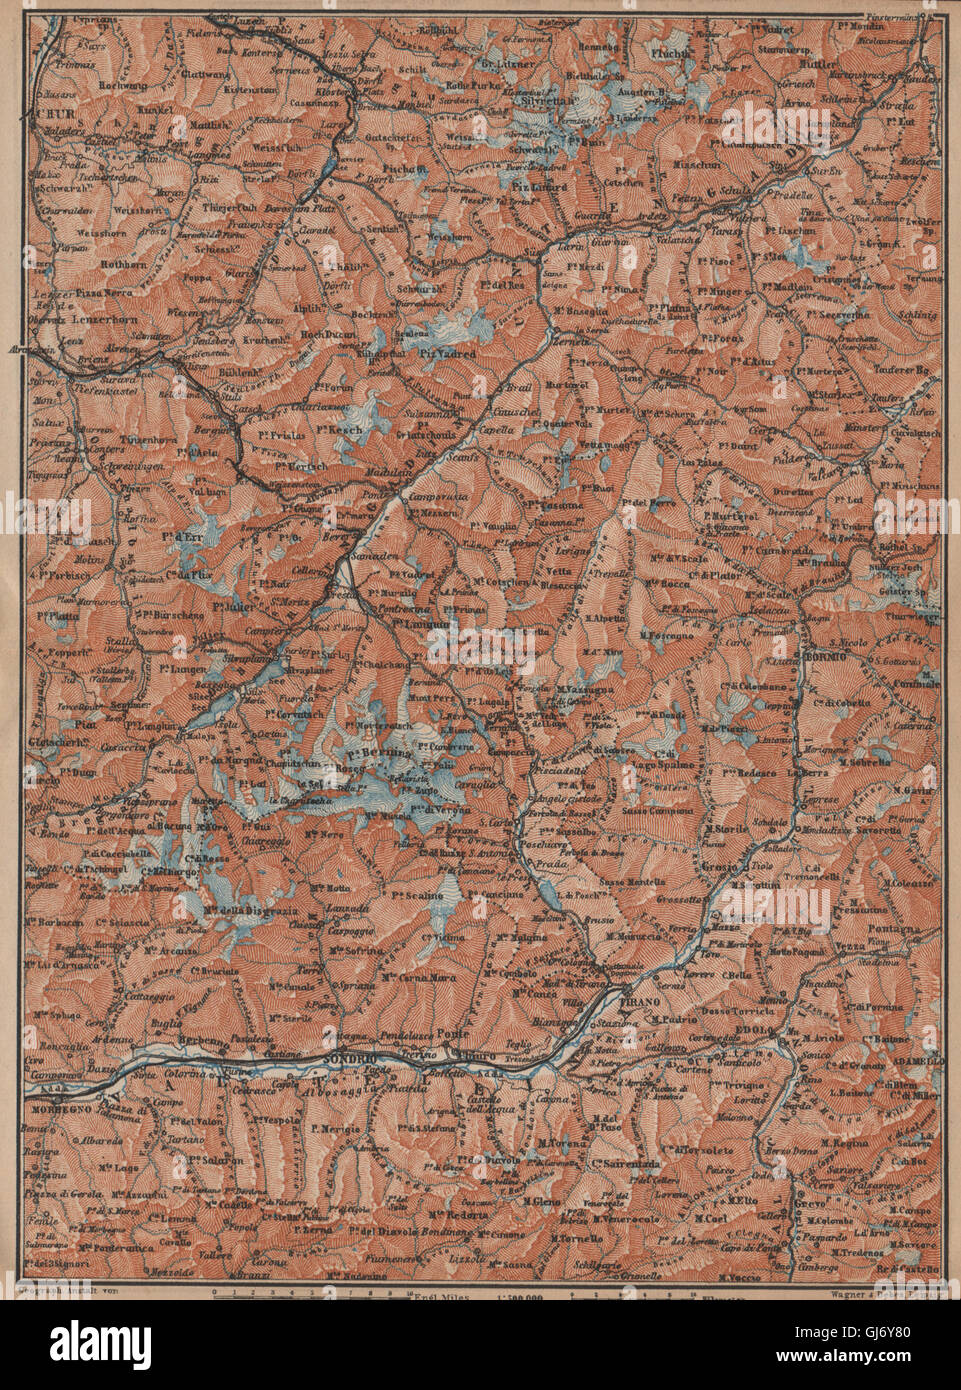 ENGADINE/VAL TELLINA. Davos Arosa Sils Bormio Livigno Sondrio Chur, 1907 map Stock Photo